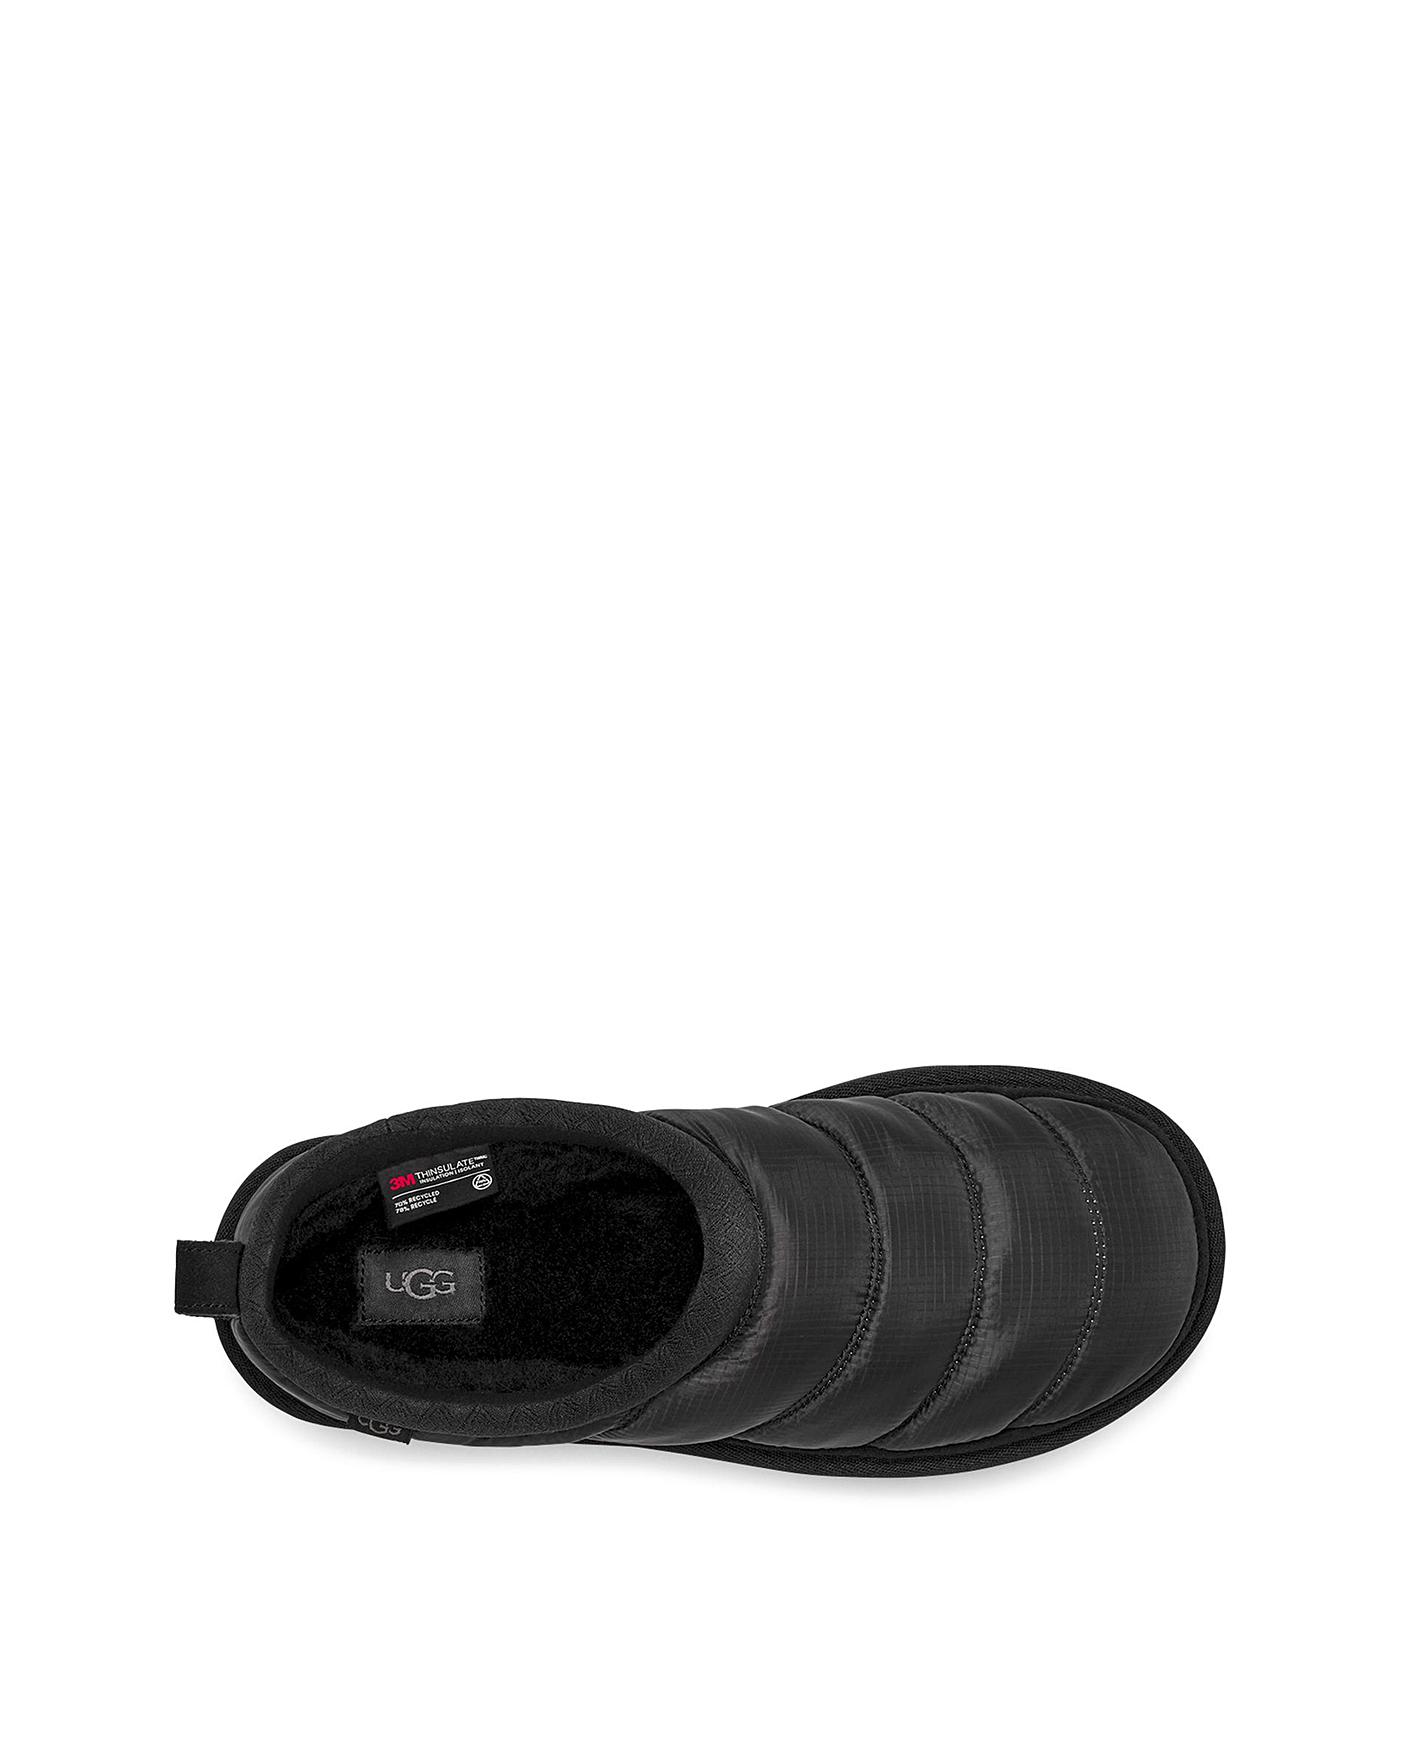 Ugg Tasman Waterproof Slippers Standard | J D Williams